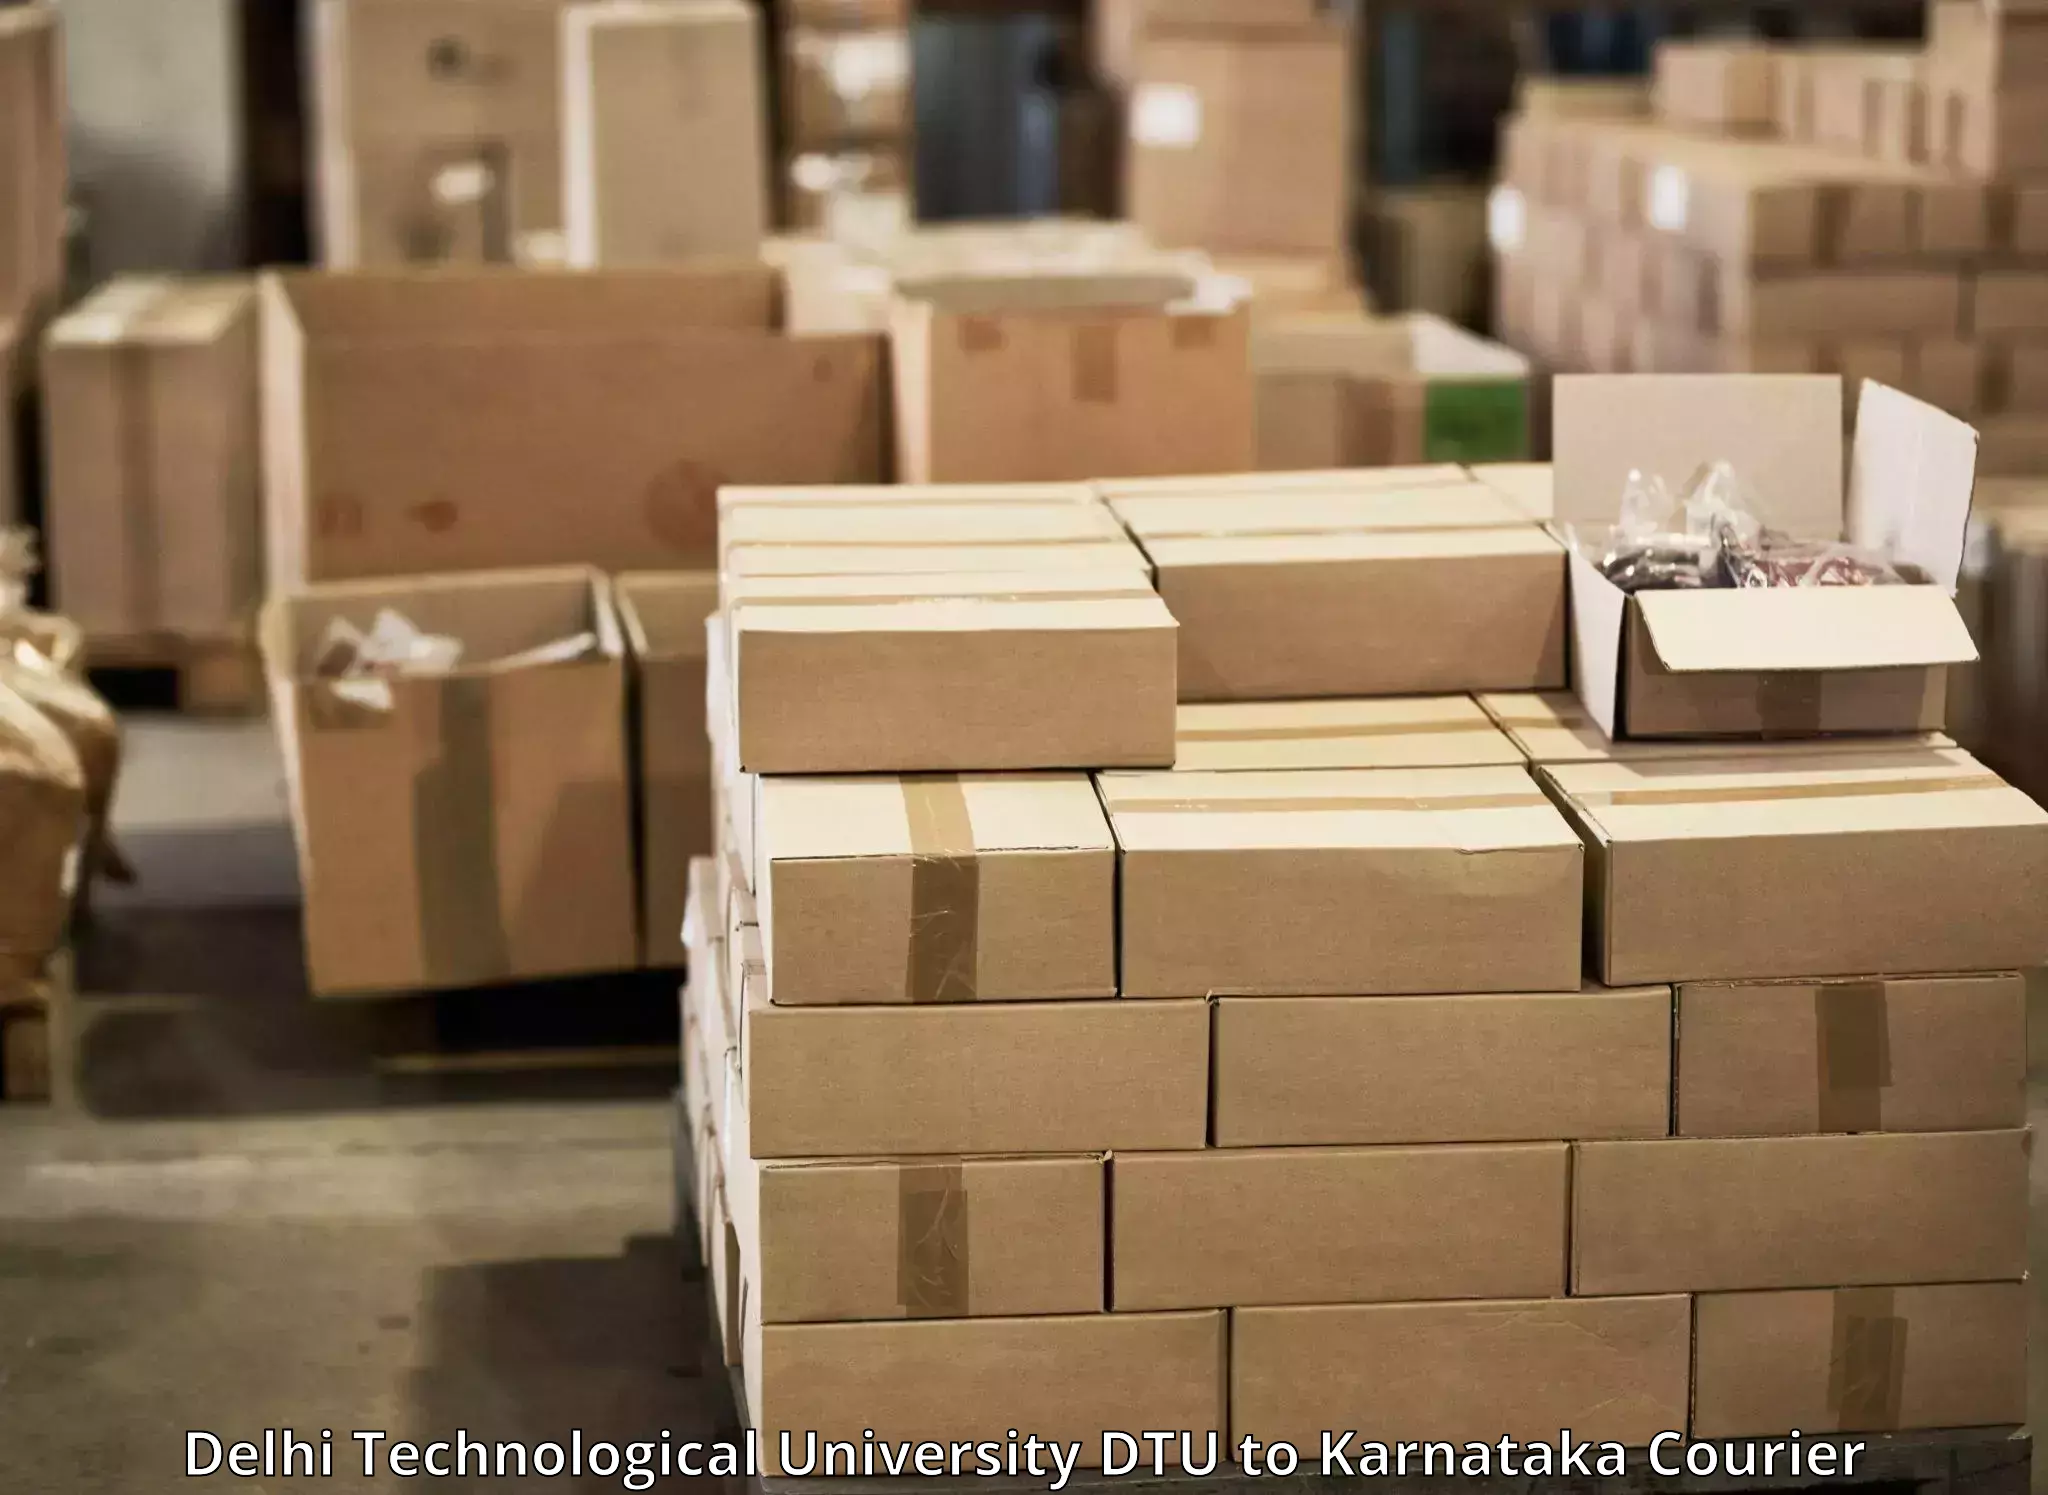 Reliable parcel services Delhi Technological University DTU to Bengaluru